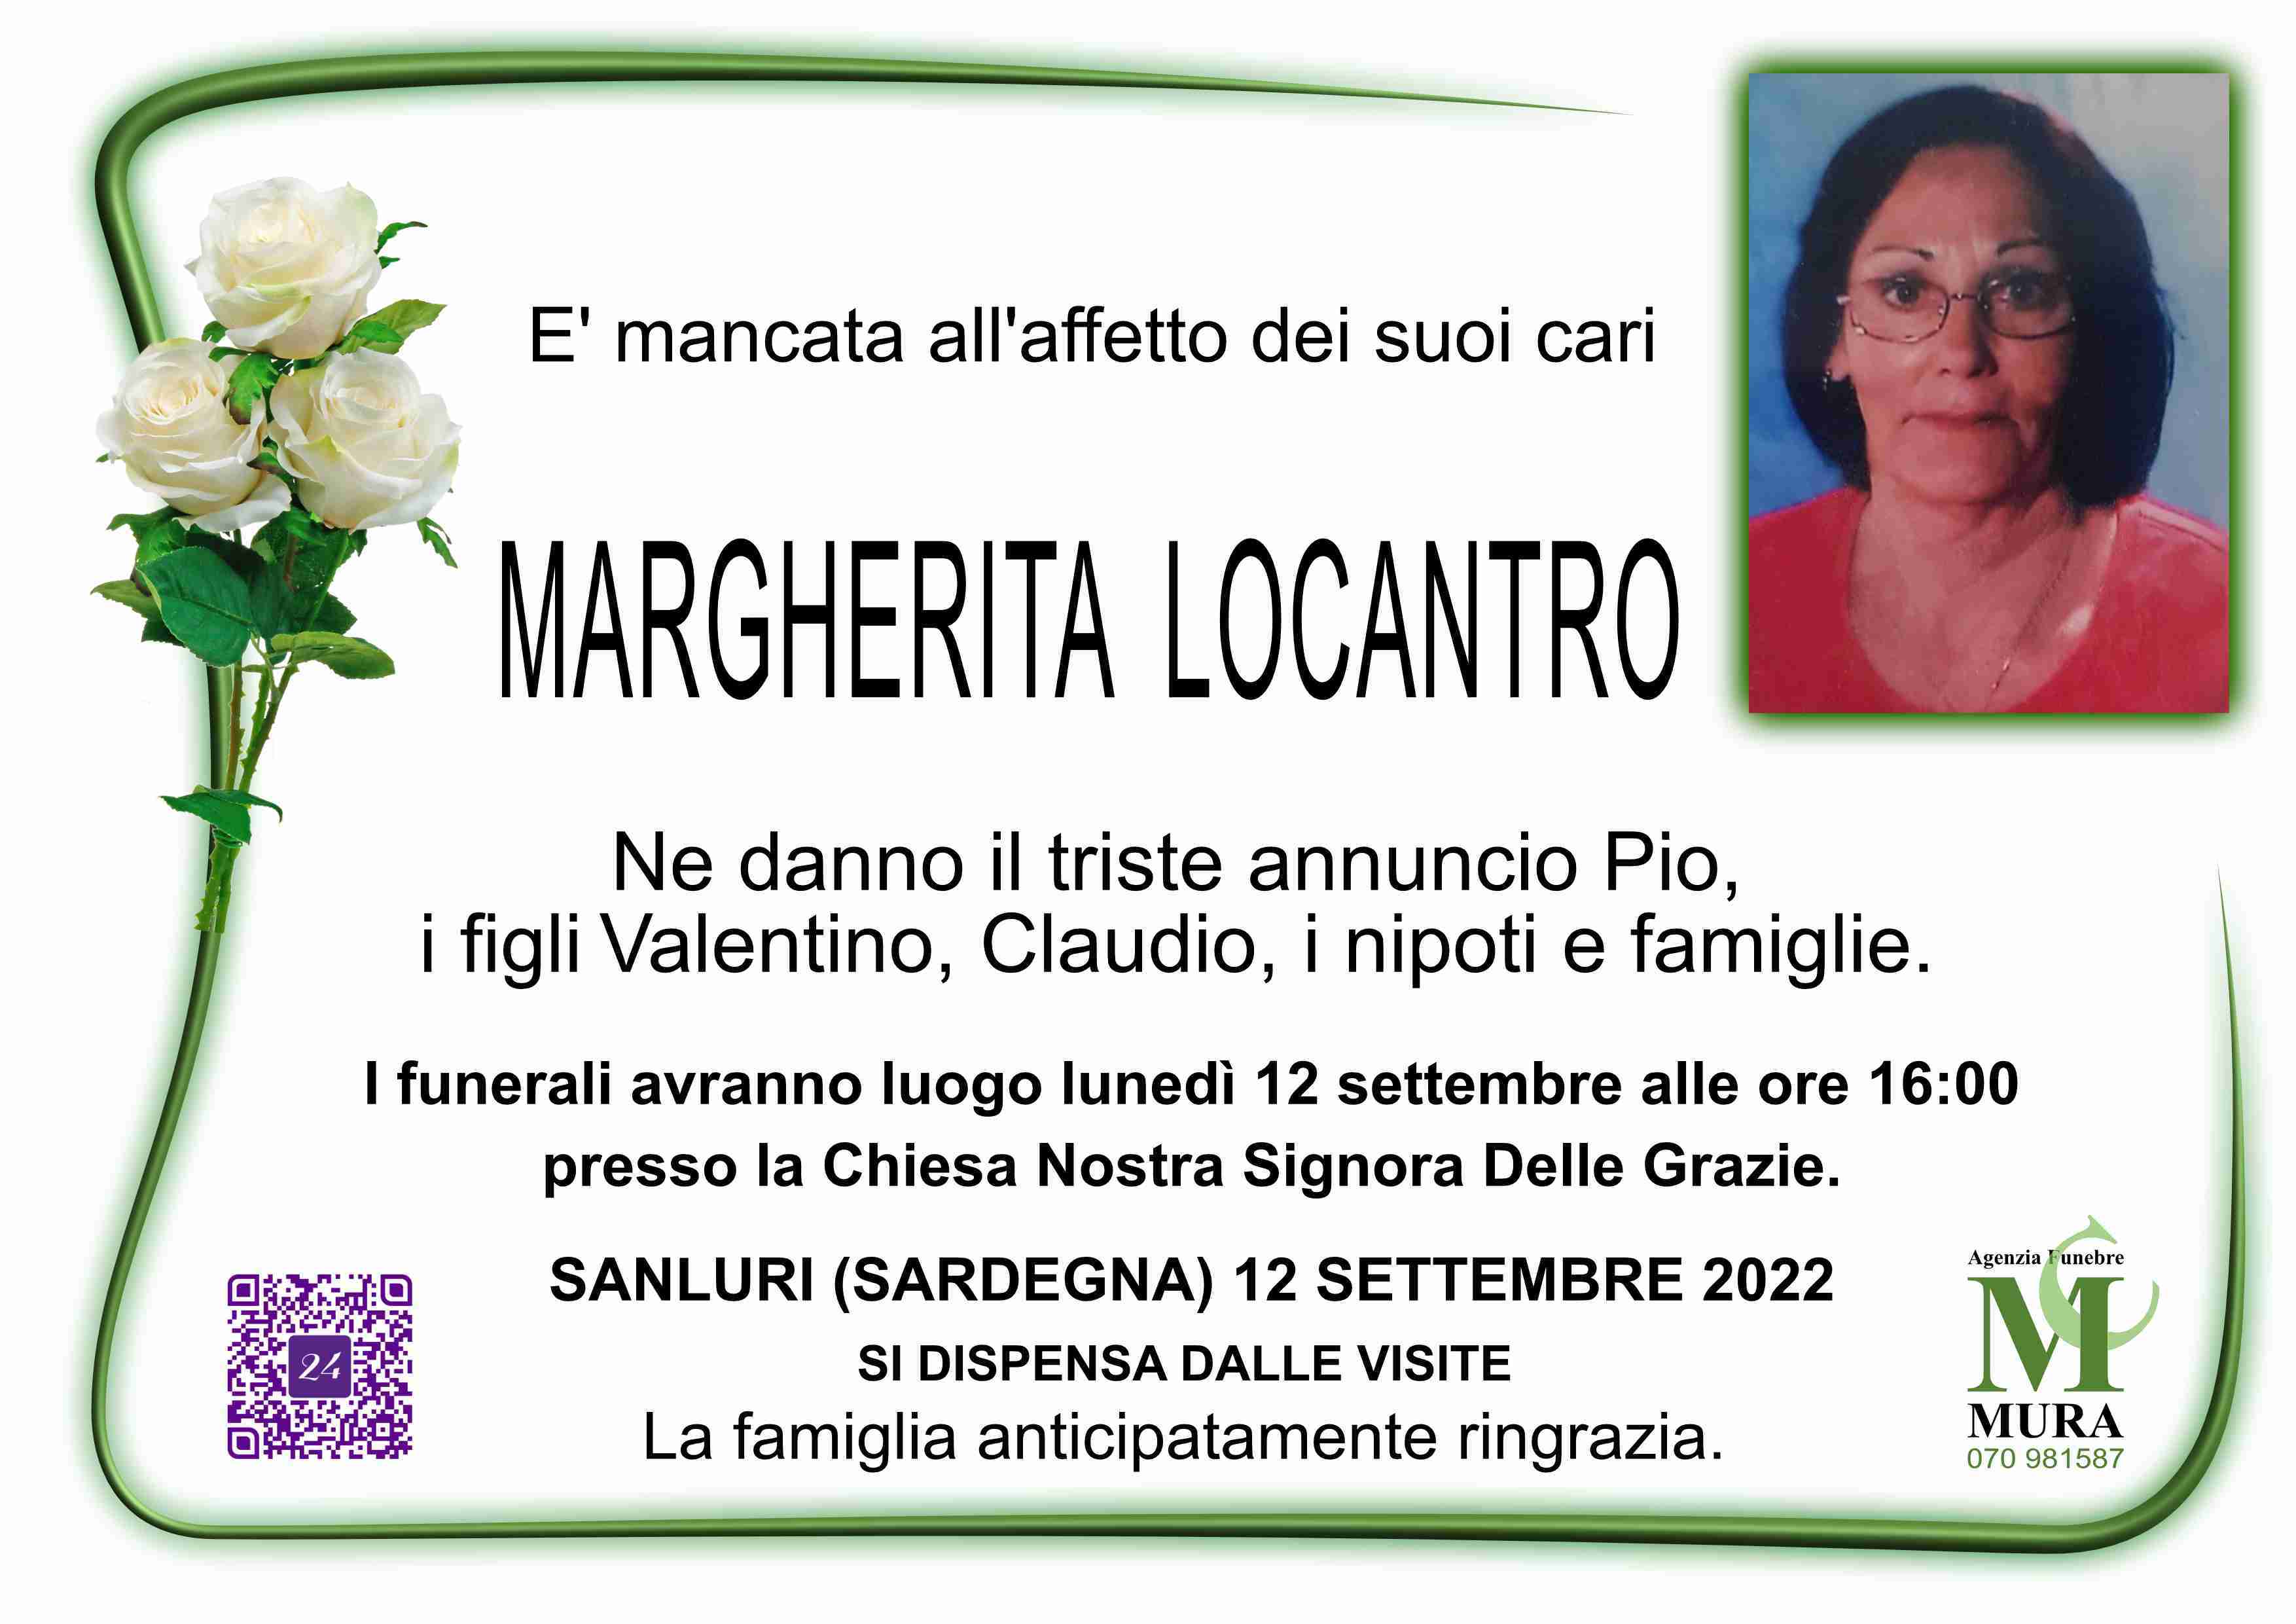 Margherita Locantro